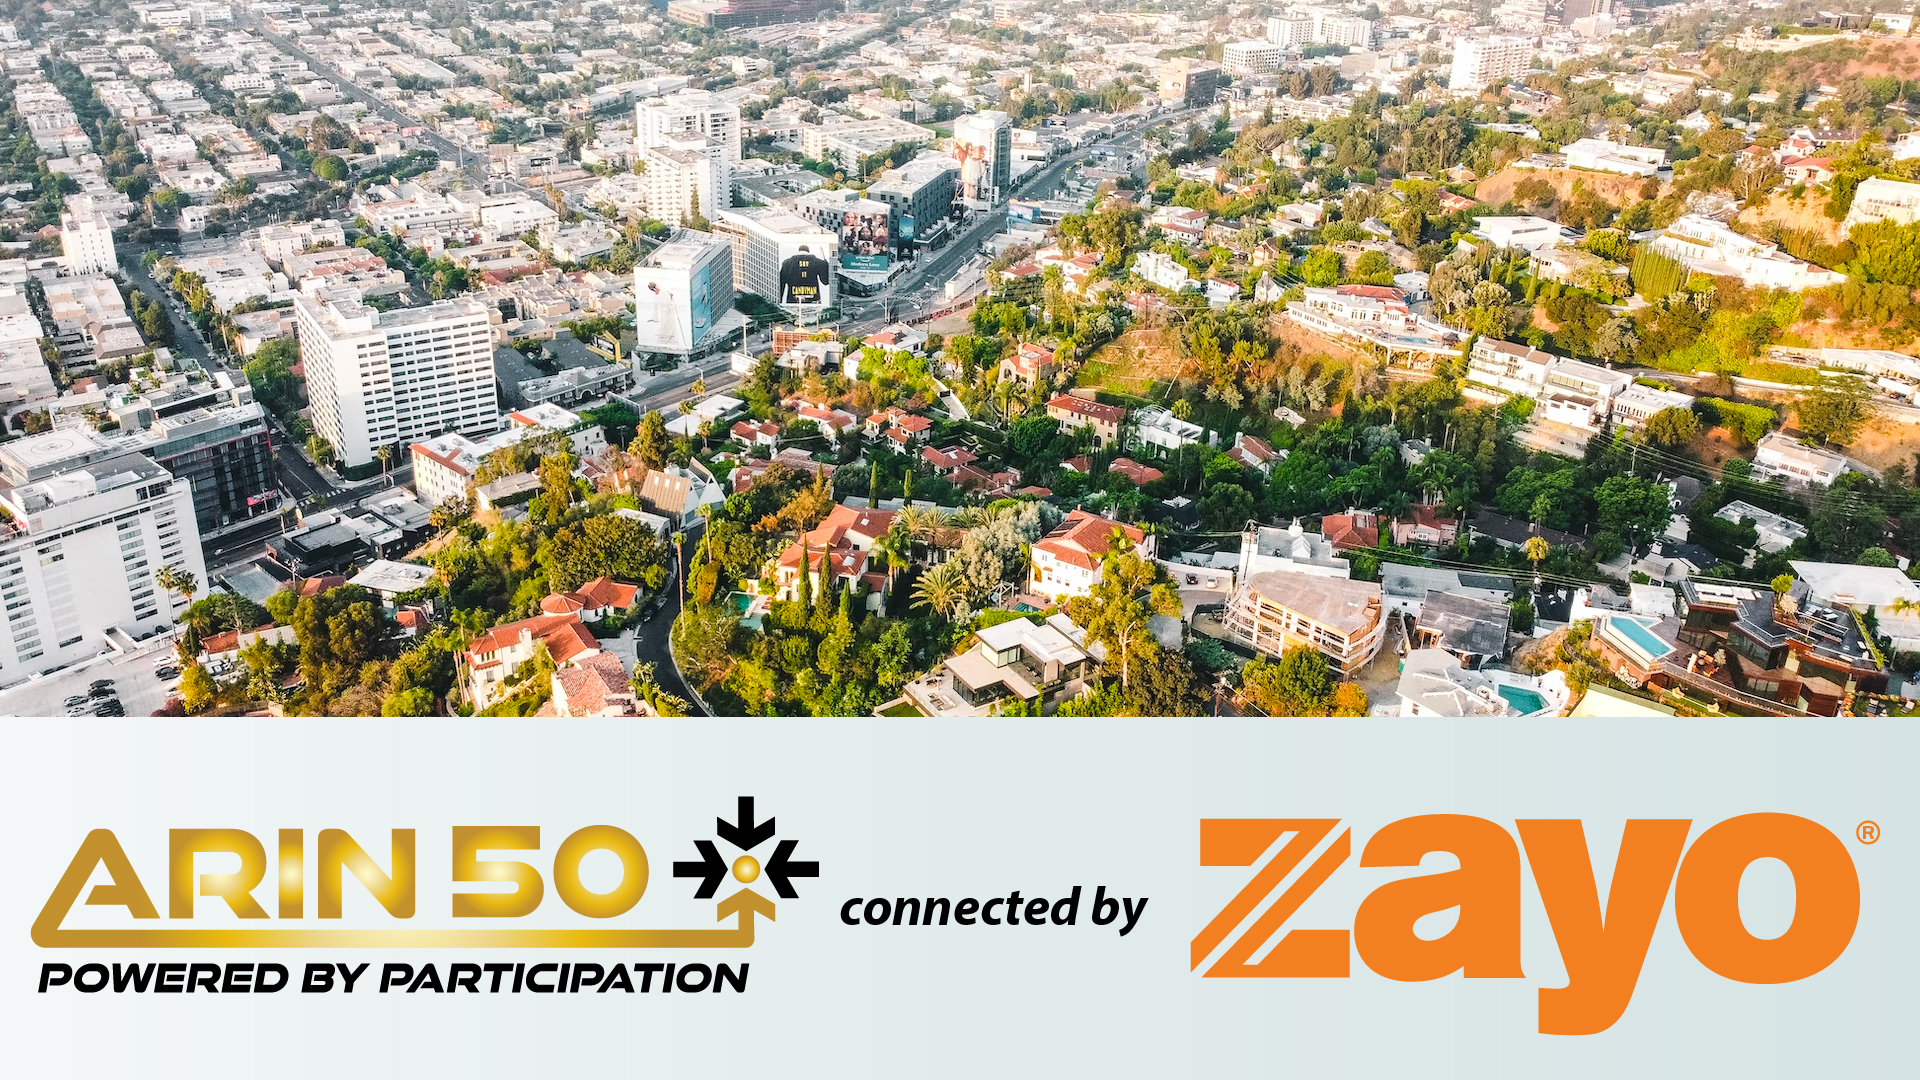 Meet ARIN 50 Network Sponsor, Zayo